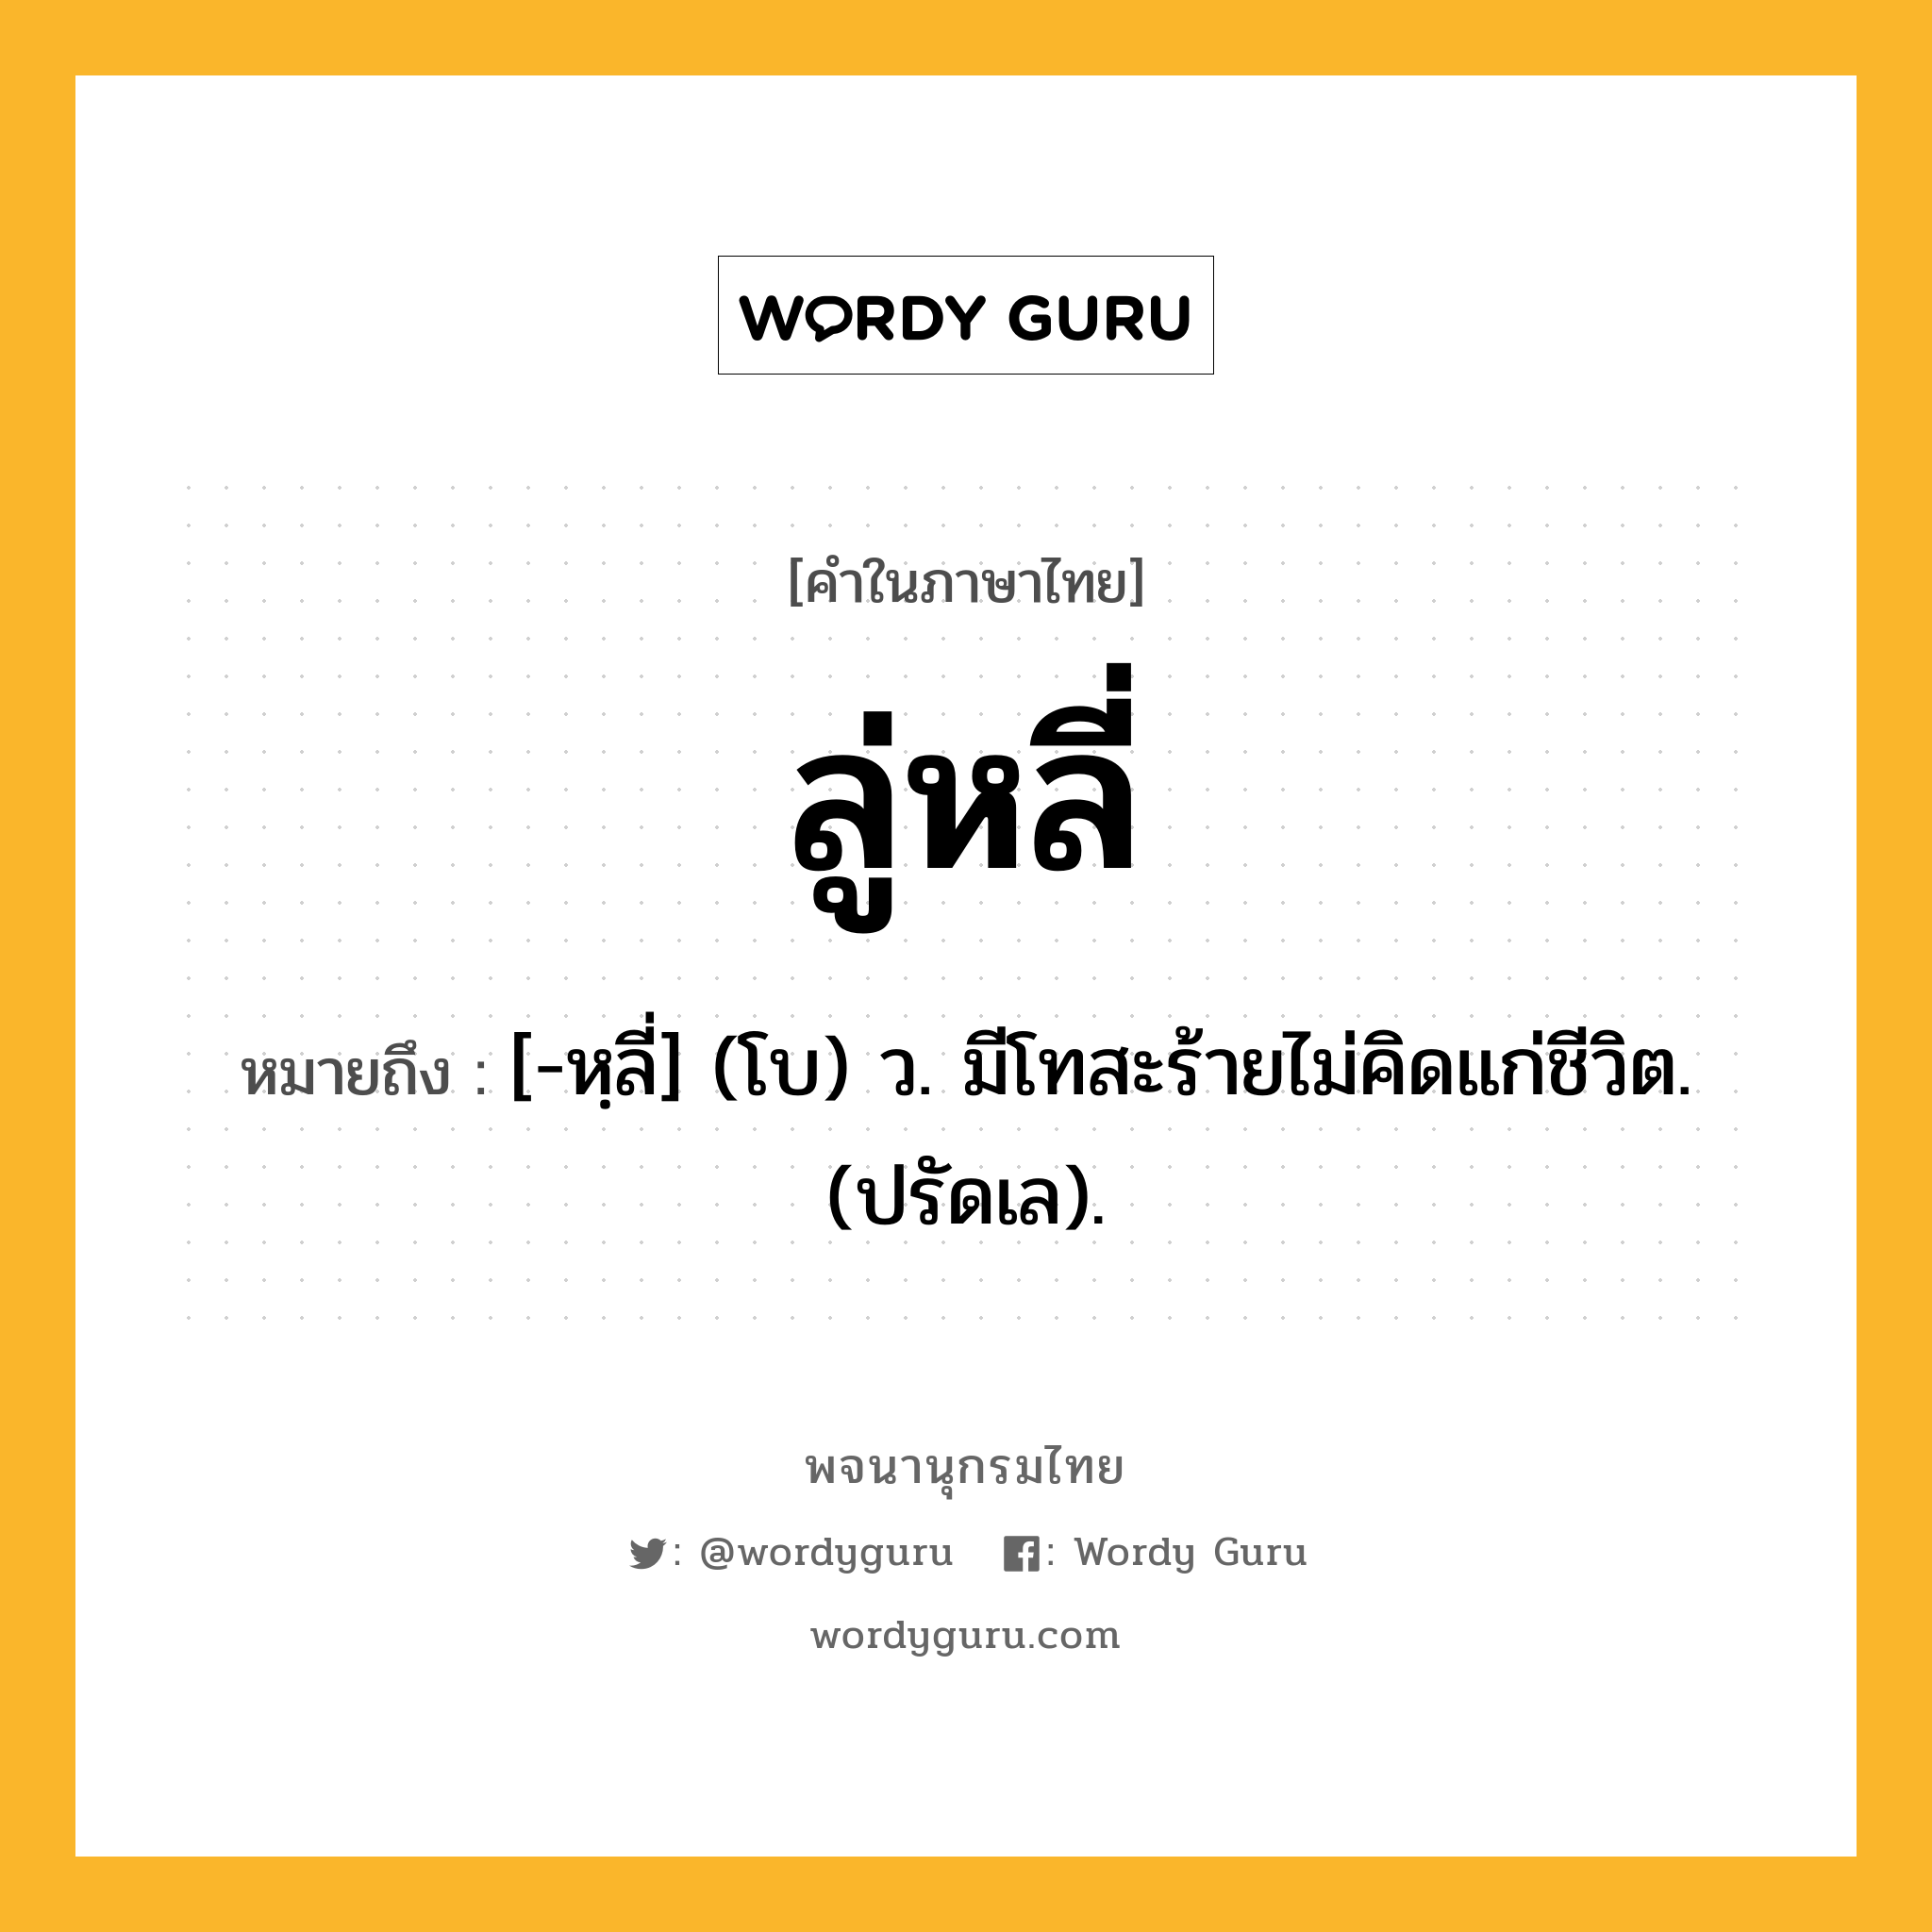 ลู่หลี่ หมายถึงอะไร?, คำในภาษาไทย ลู่หลี่ หมายถึง [-หฺลี่] (โบ) ว. มีโทสะร้ายไม่คิดแก่ชีวิต. (ปรัดเล).